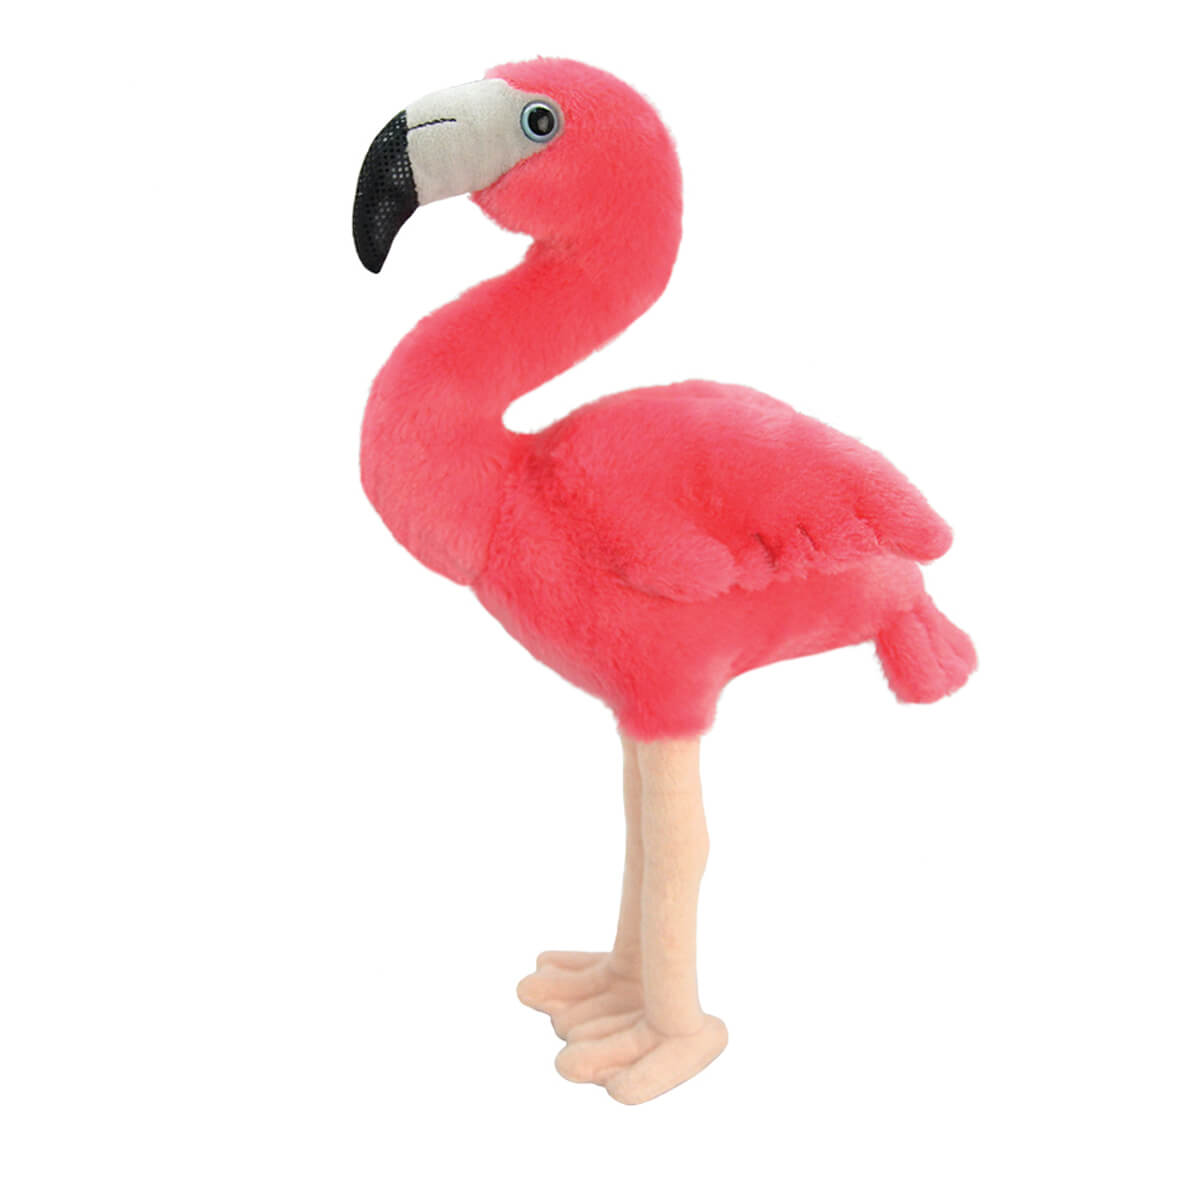 ΠΑΙΔΙ | Παιχνίδια | Έπιτραπέζια - Παζλ - Βιβλία - Χειροτεχνίες | ΦΙΓΟΥΡΕΣ - ΛΟΥΤΡΙΝΑ - ROLE GAMES K8185 Flamingo 30Cm